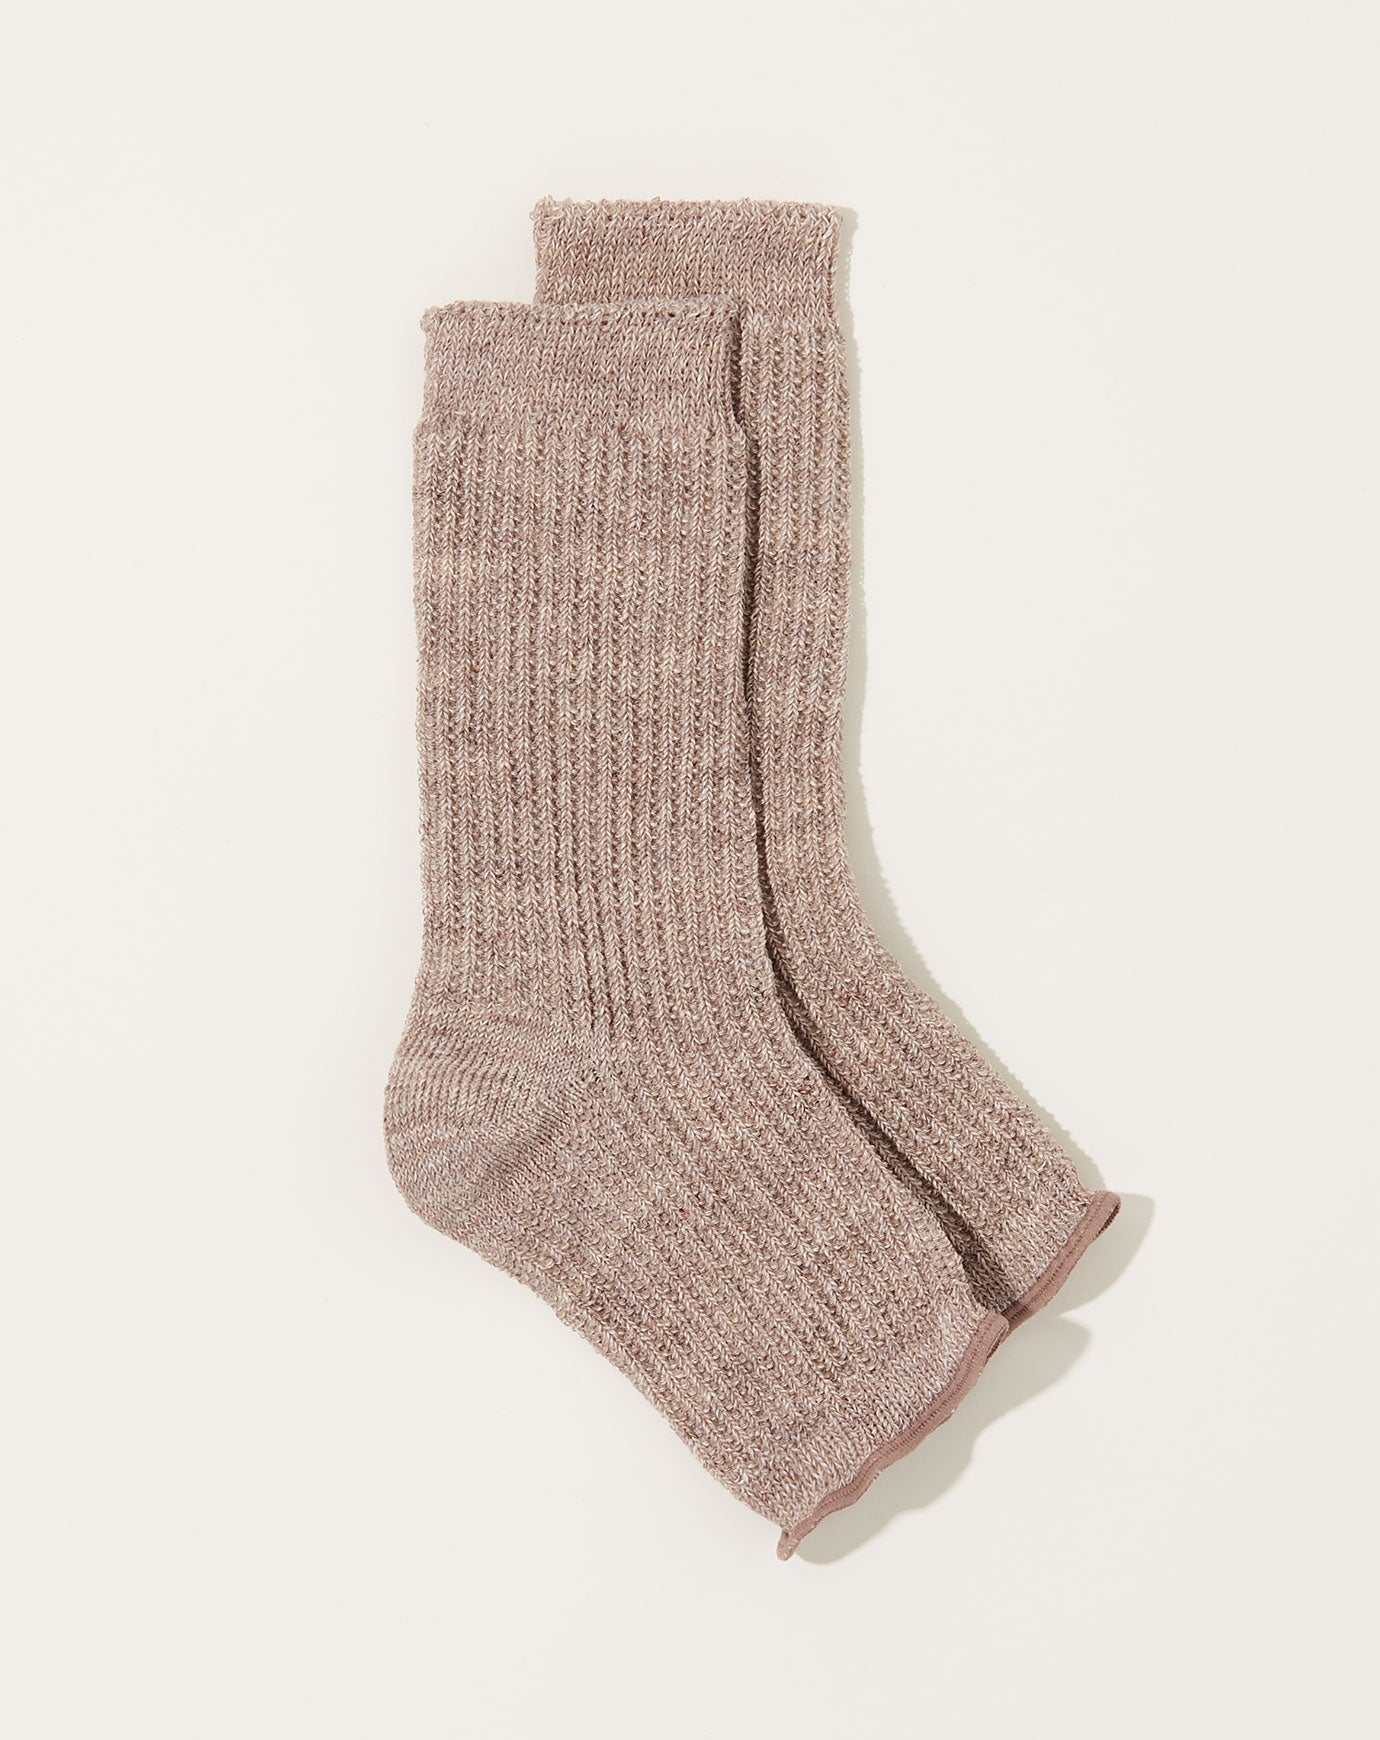 Nishiguchi Kutsushita Linen Sandal Socks in White Brown